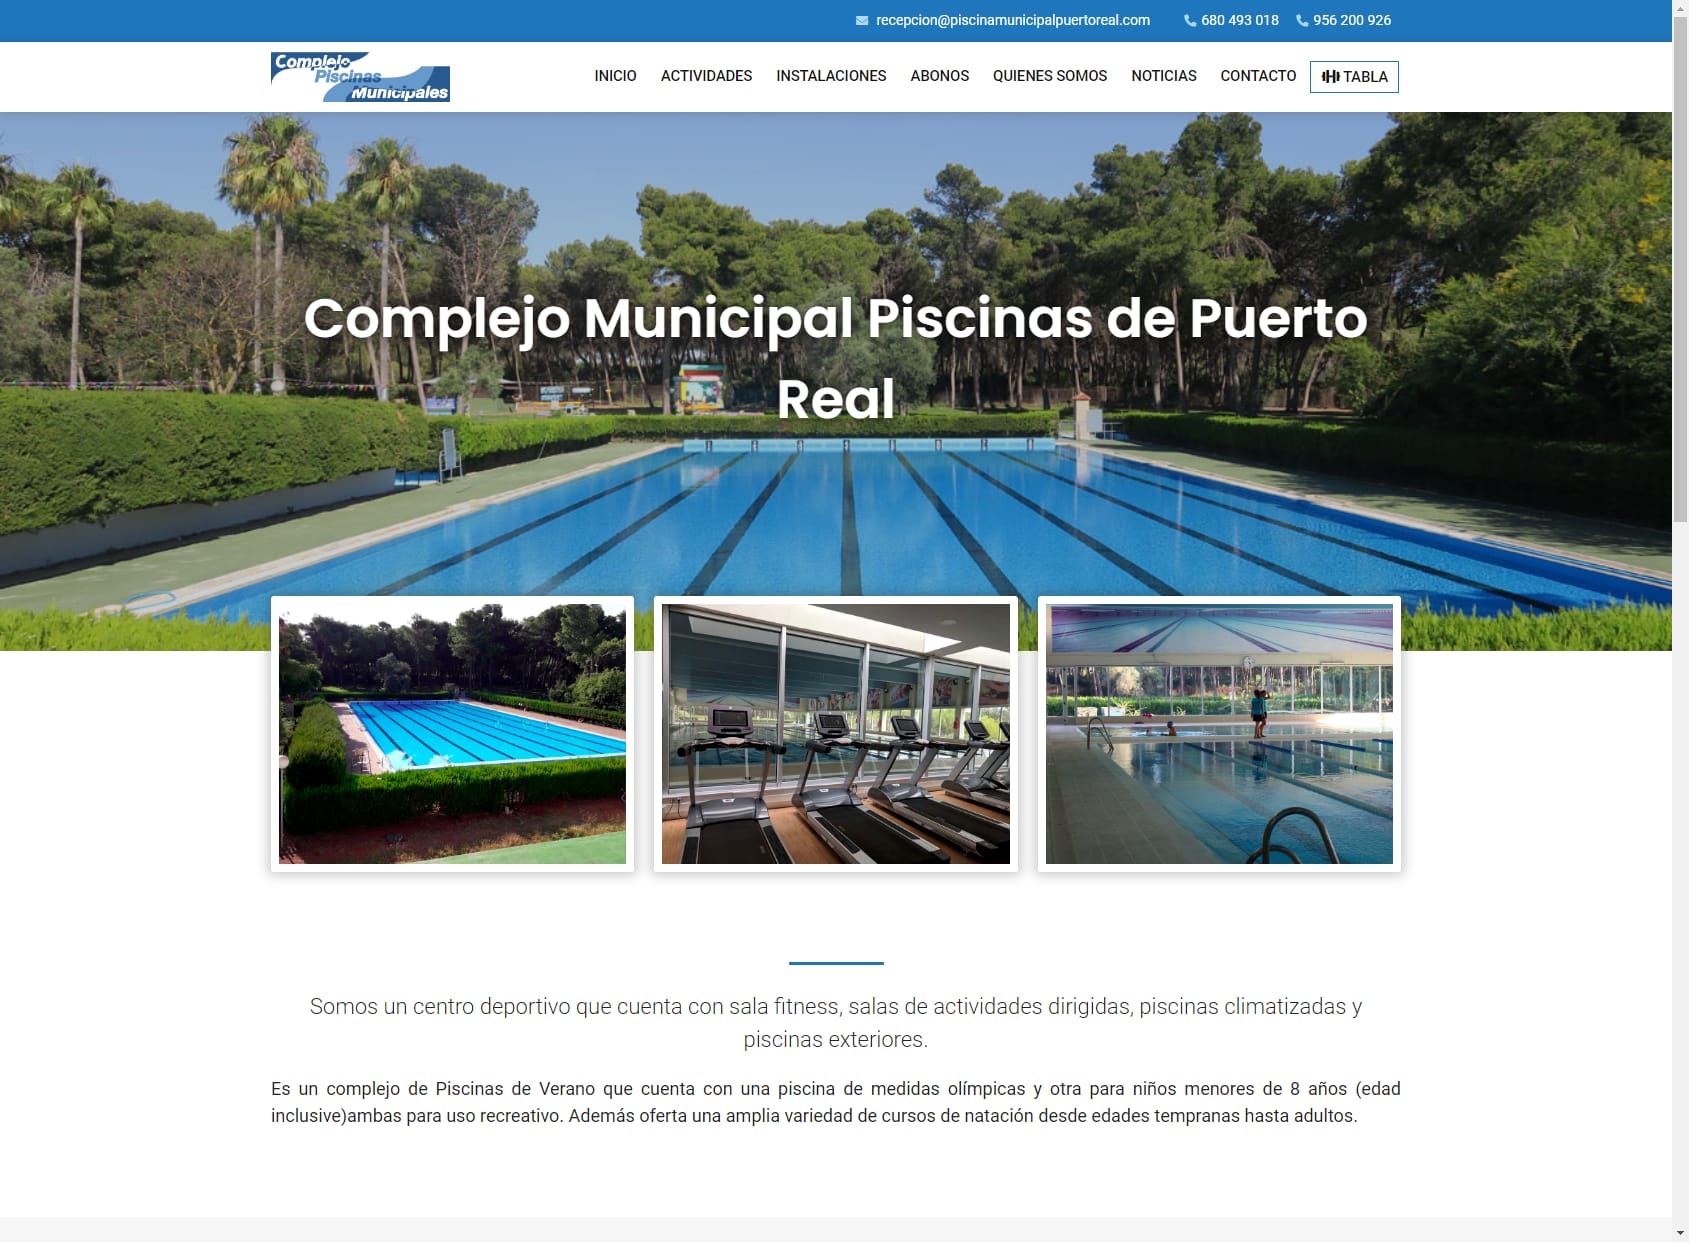 Complejo Municipal de Piscinas cubierta de Puerto Real